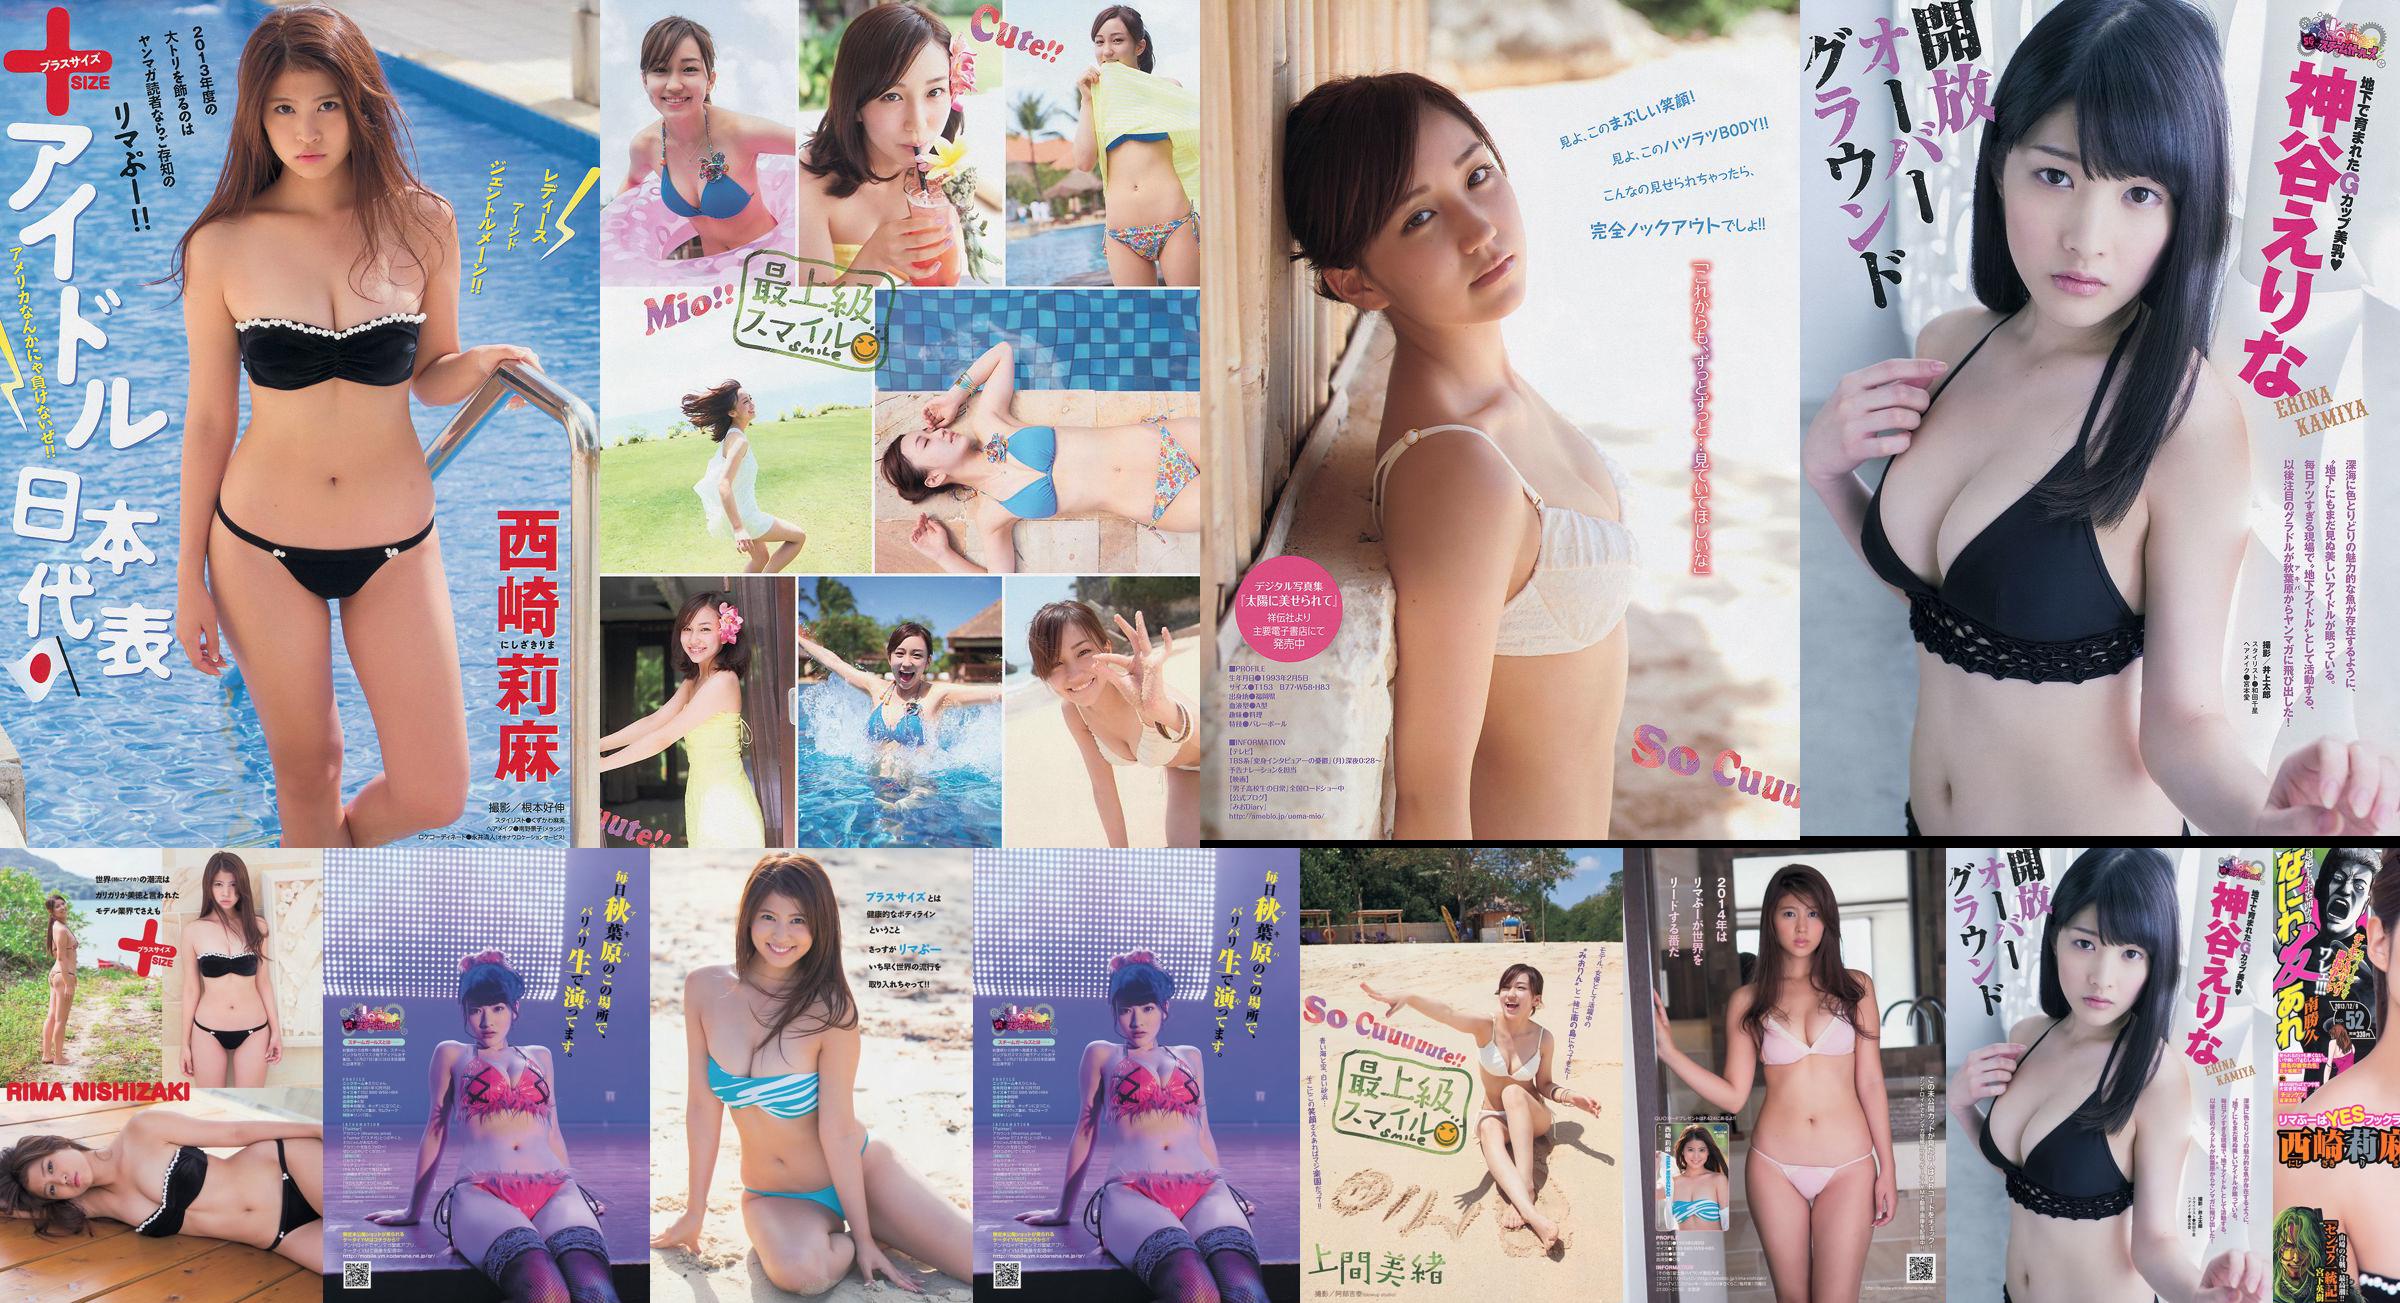 [Young Magazine] Rima Nishizaki Mio Uema Erina Kamiya 2013 No.52 Photo Moshi No.b5eaad Page 3